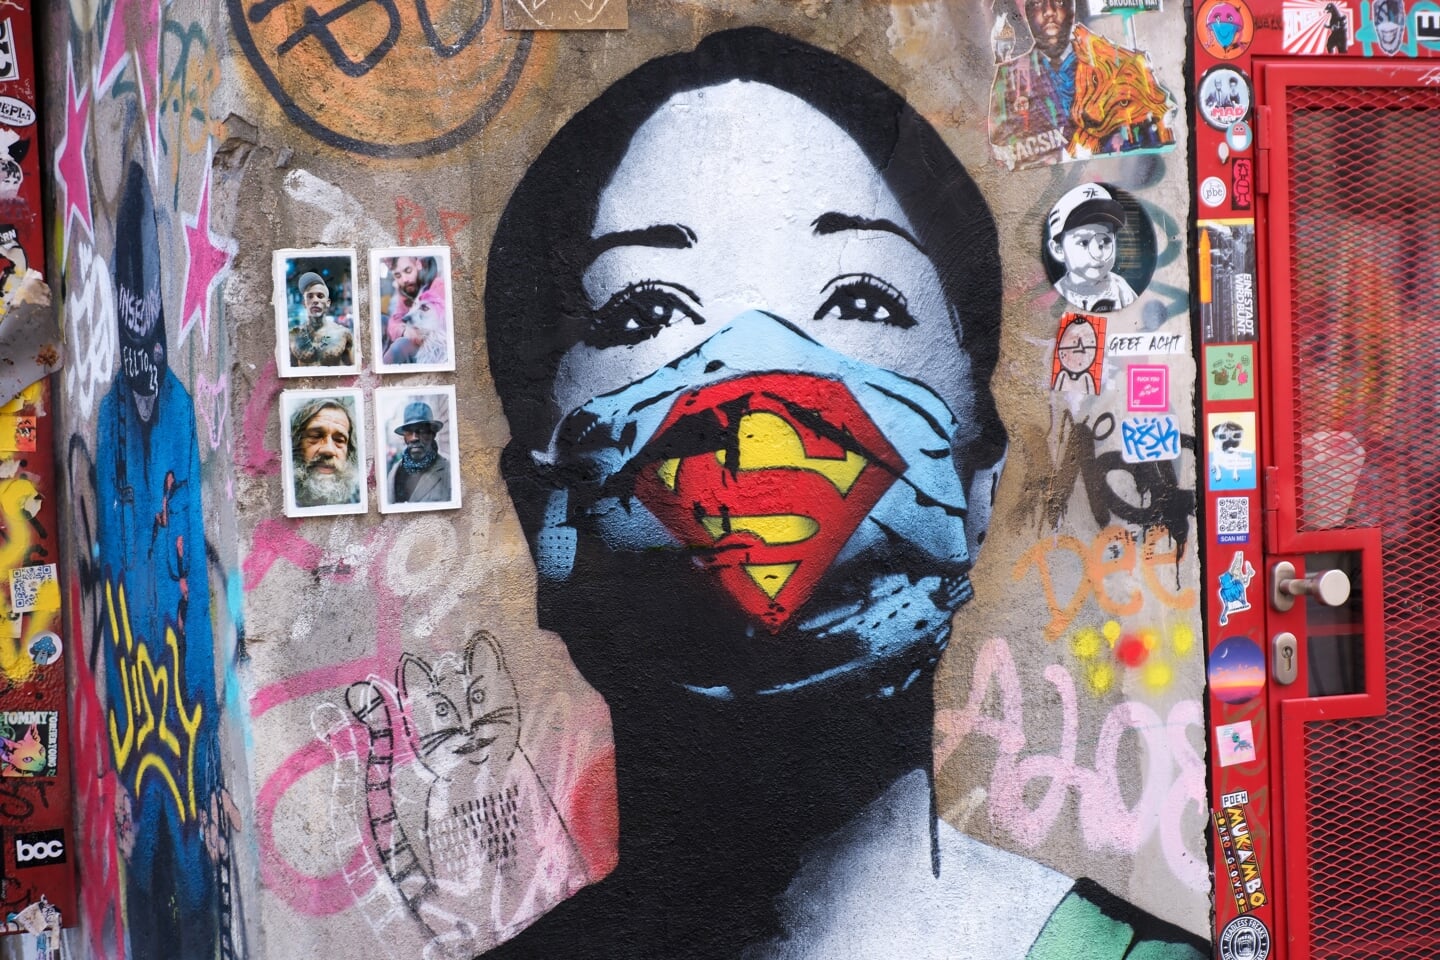 Muurschildering van verpleegster met mondkapje gemaakt tijdens de corona-pandemie door street artist Fake op een muur op het NDSM-plein in Amsterdam Noord.